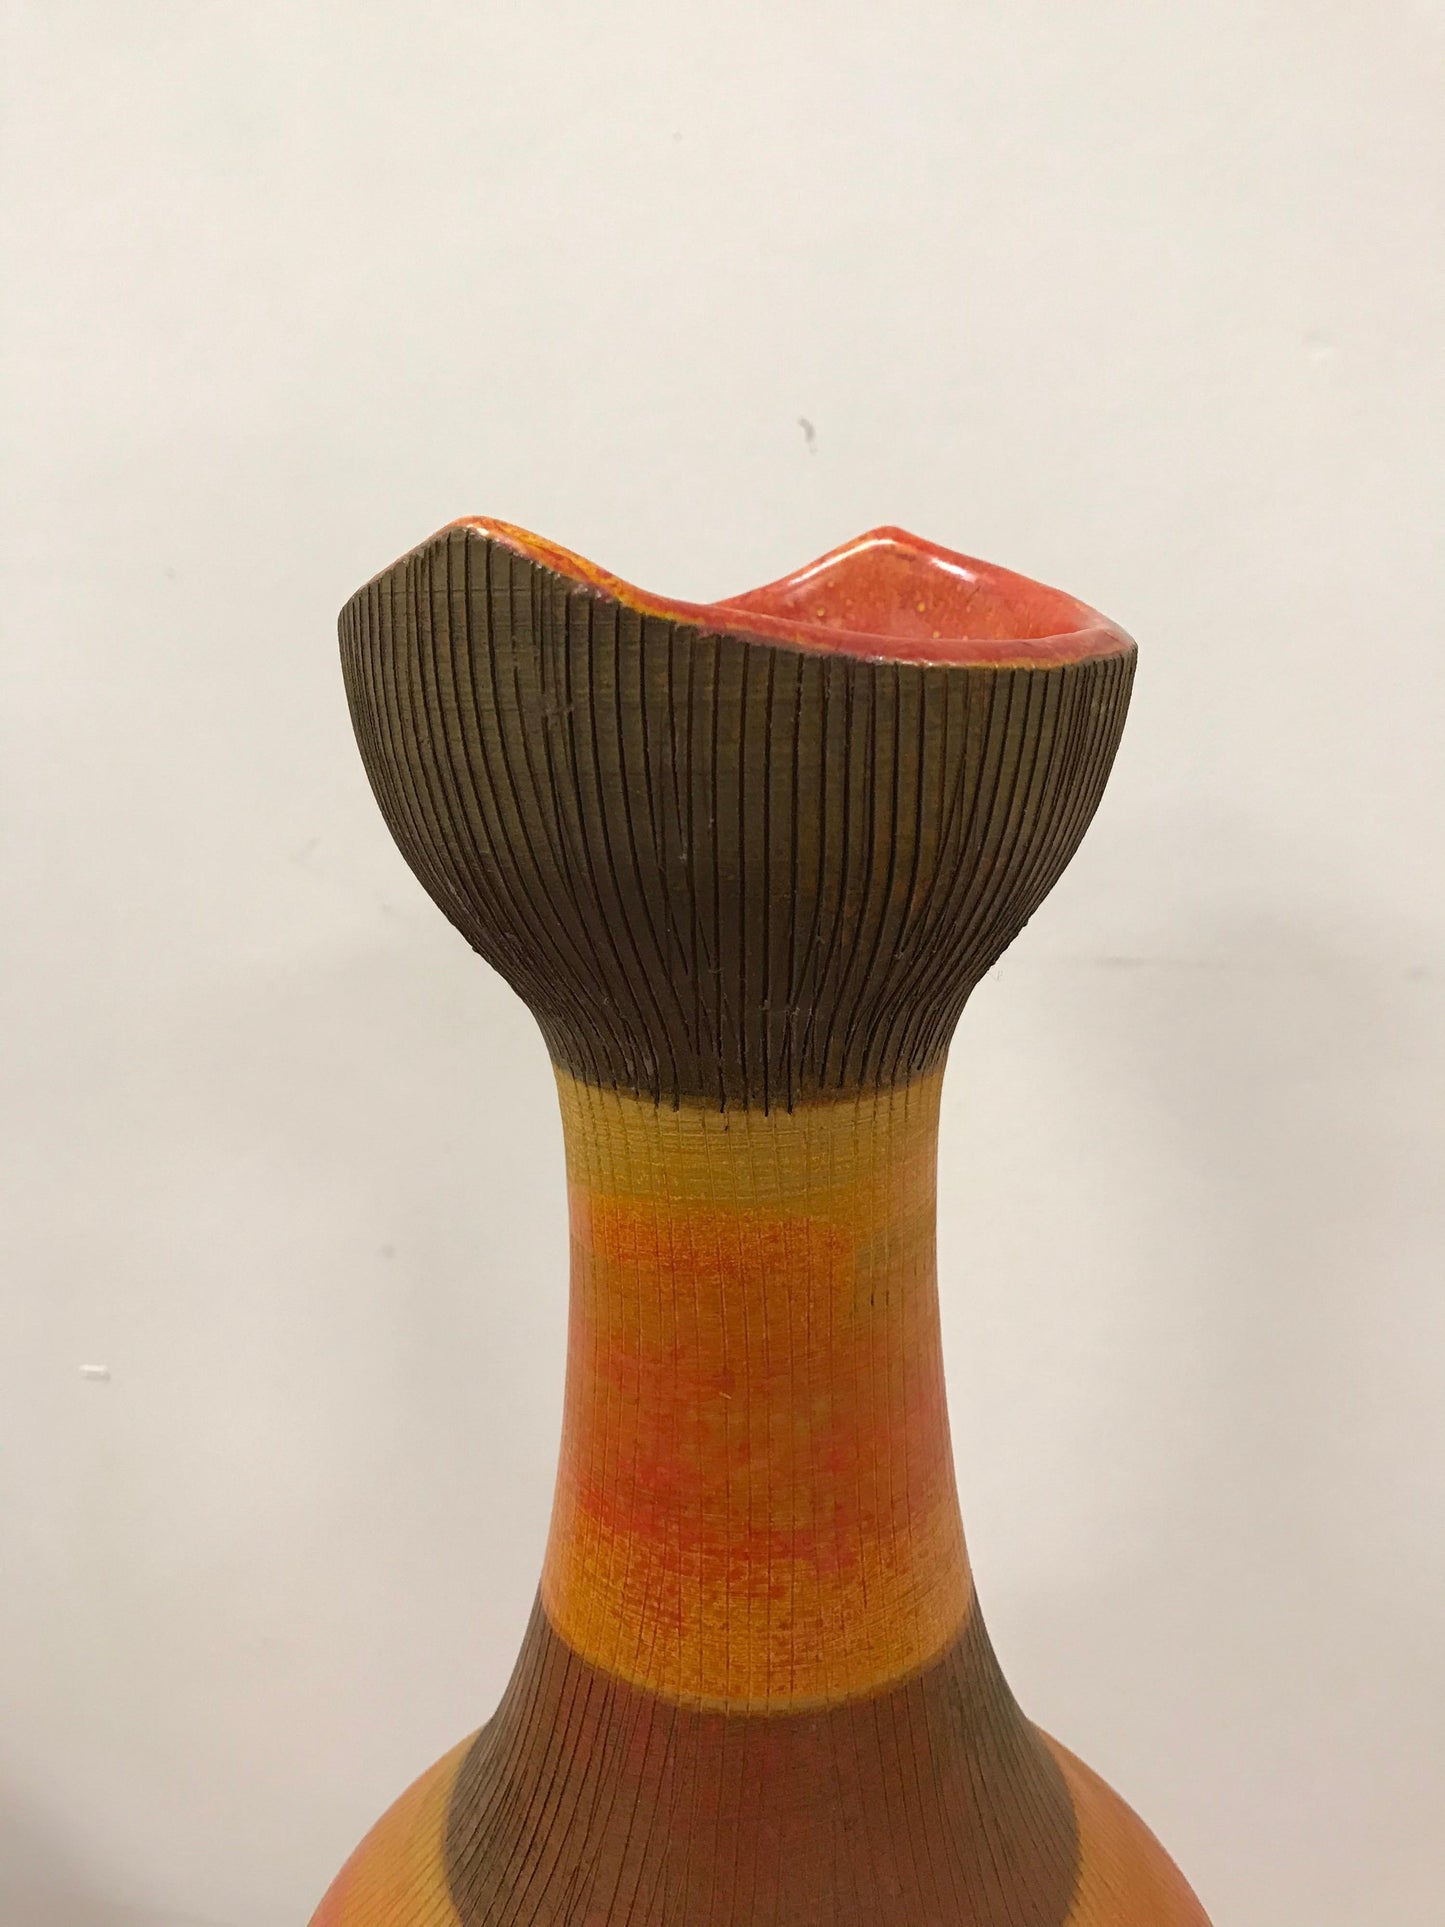 Rare Aldo Londi for Bitossi Floor Vase, Italian Ceramic